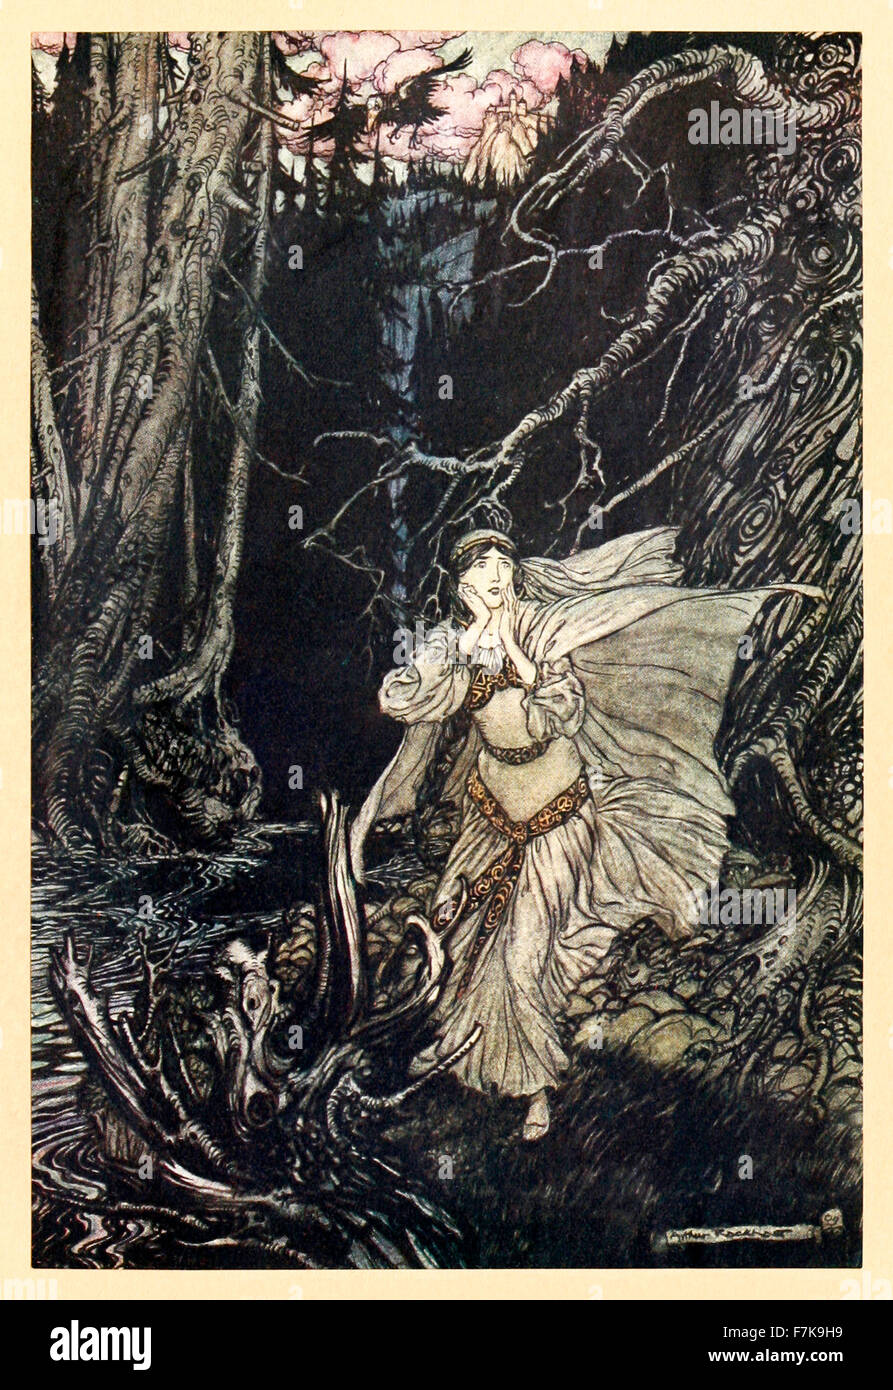 "Bertalda in das Black Valley" von "Undine", illustriert von Arthur Rackham (1867-1939). Siehe Beschreibung für mehr Informationen. Stockfoto